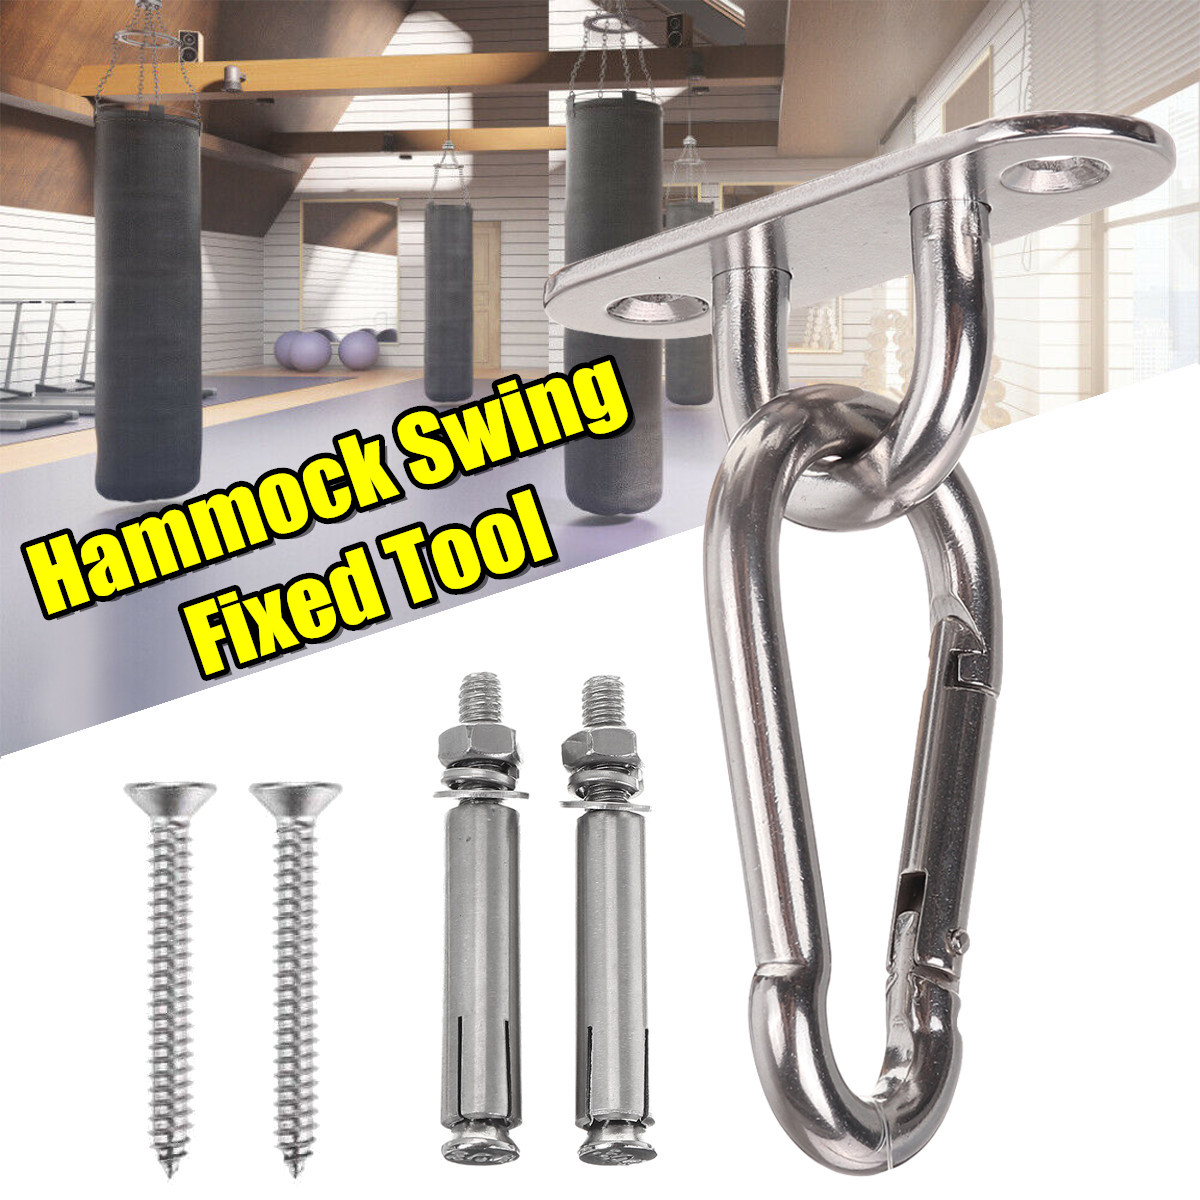 Swing-Swivel-Hook-for-Hammock-Wall-Fixing-Plate-Hardware-Stainless-Steel-Kit-1693452